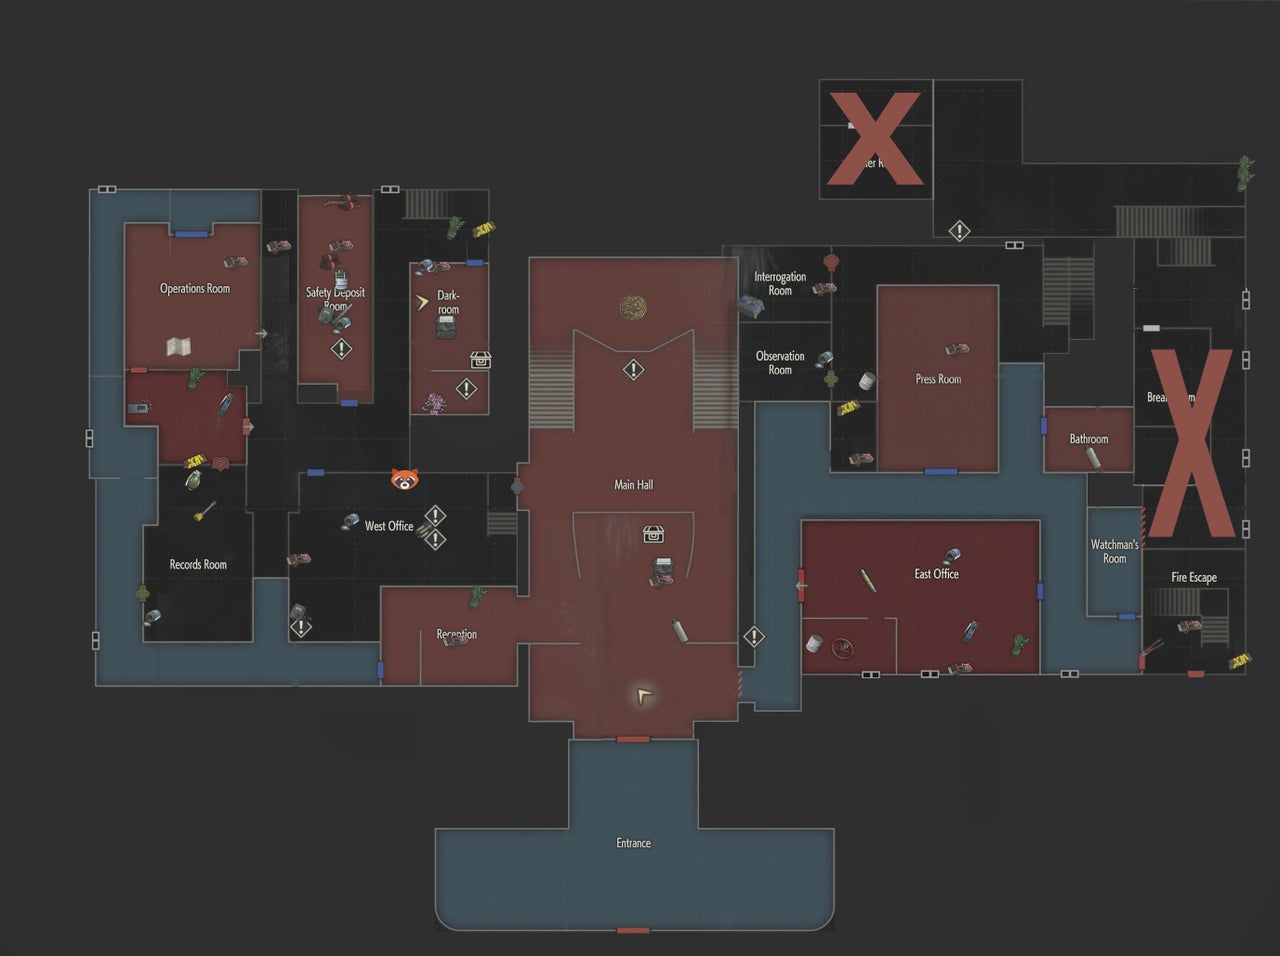 resident evil 2 remake map